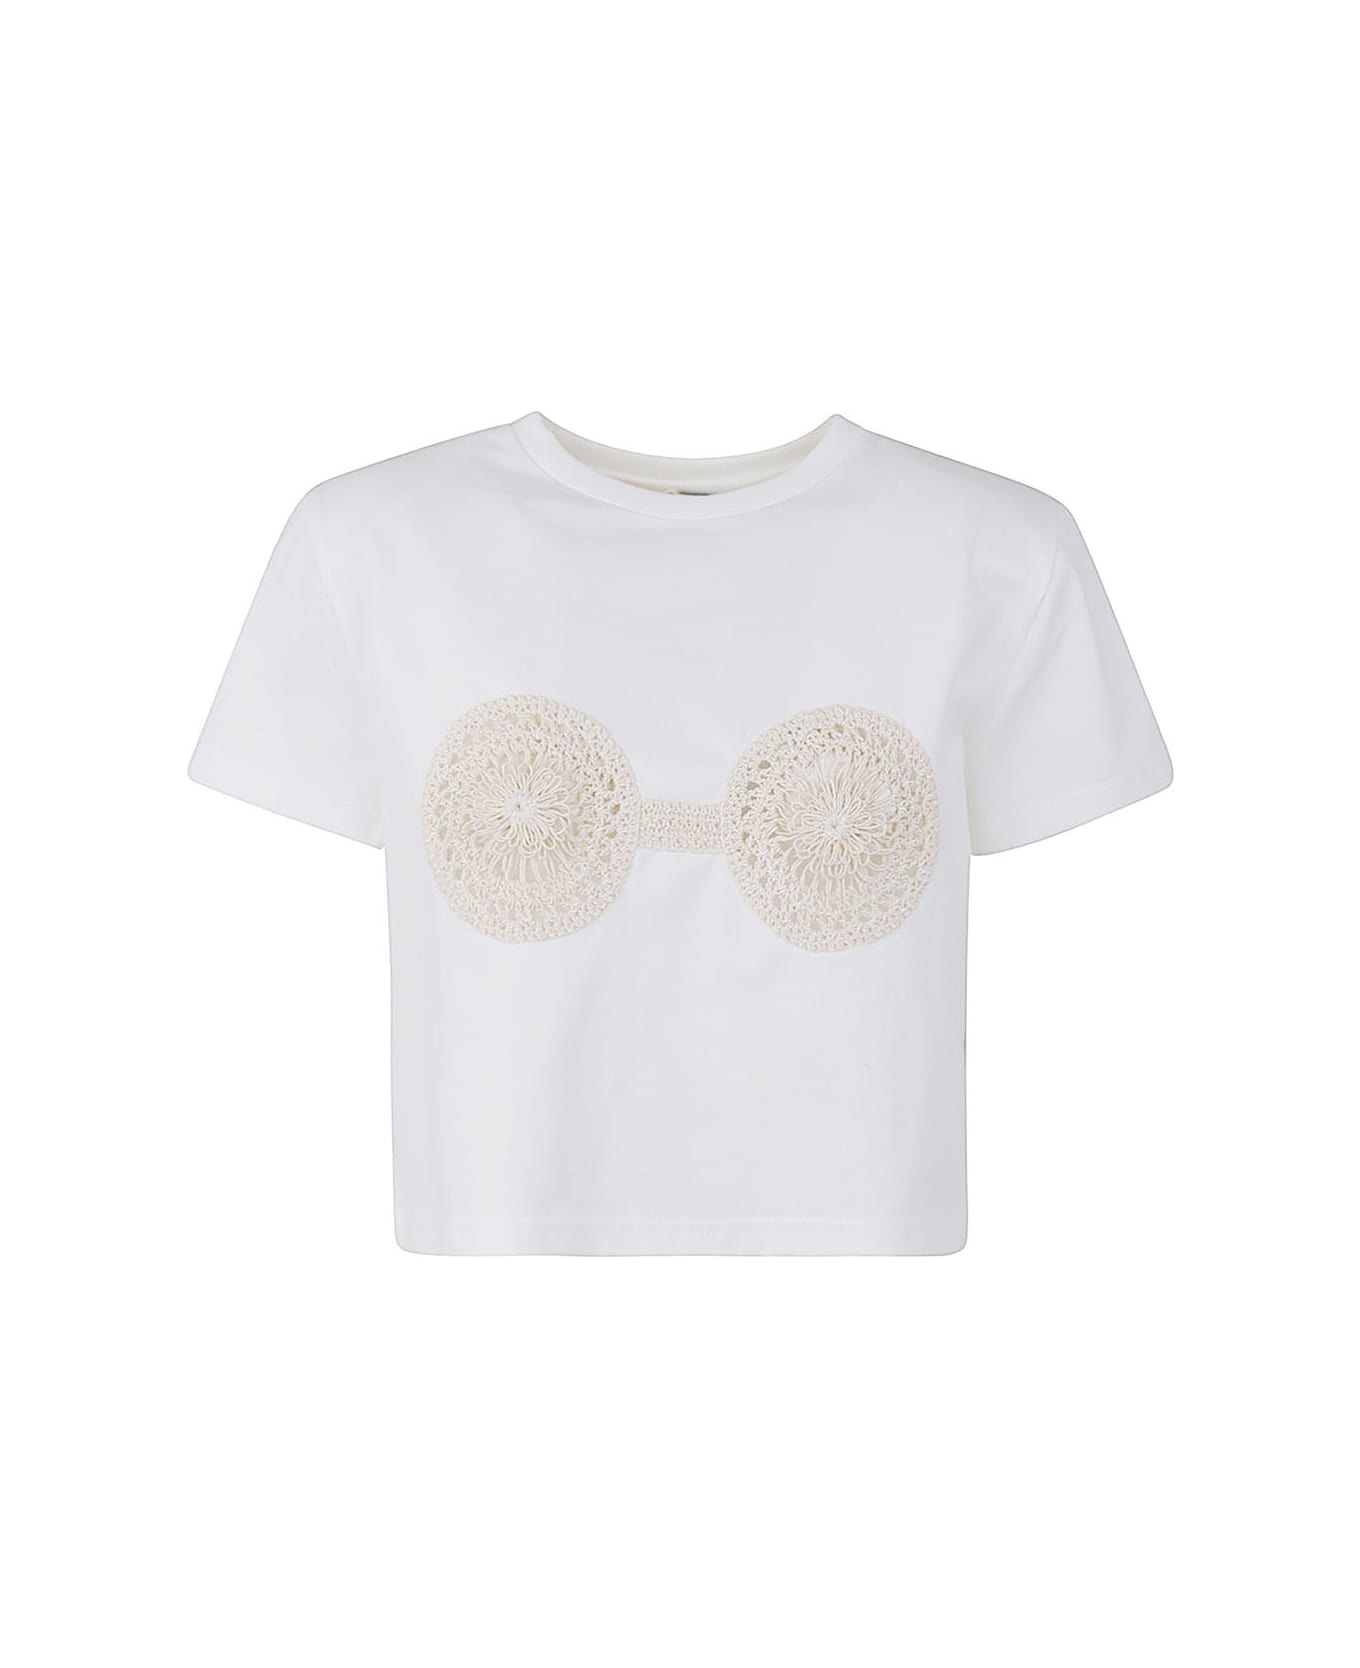 Magda Butrym Iconic Cropped T-shirt - White